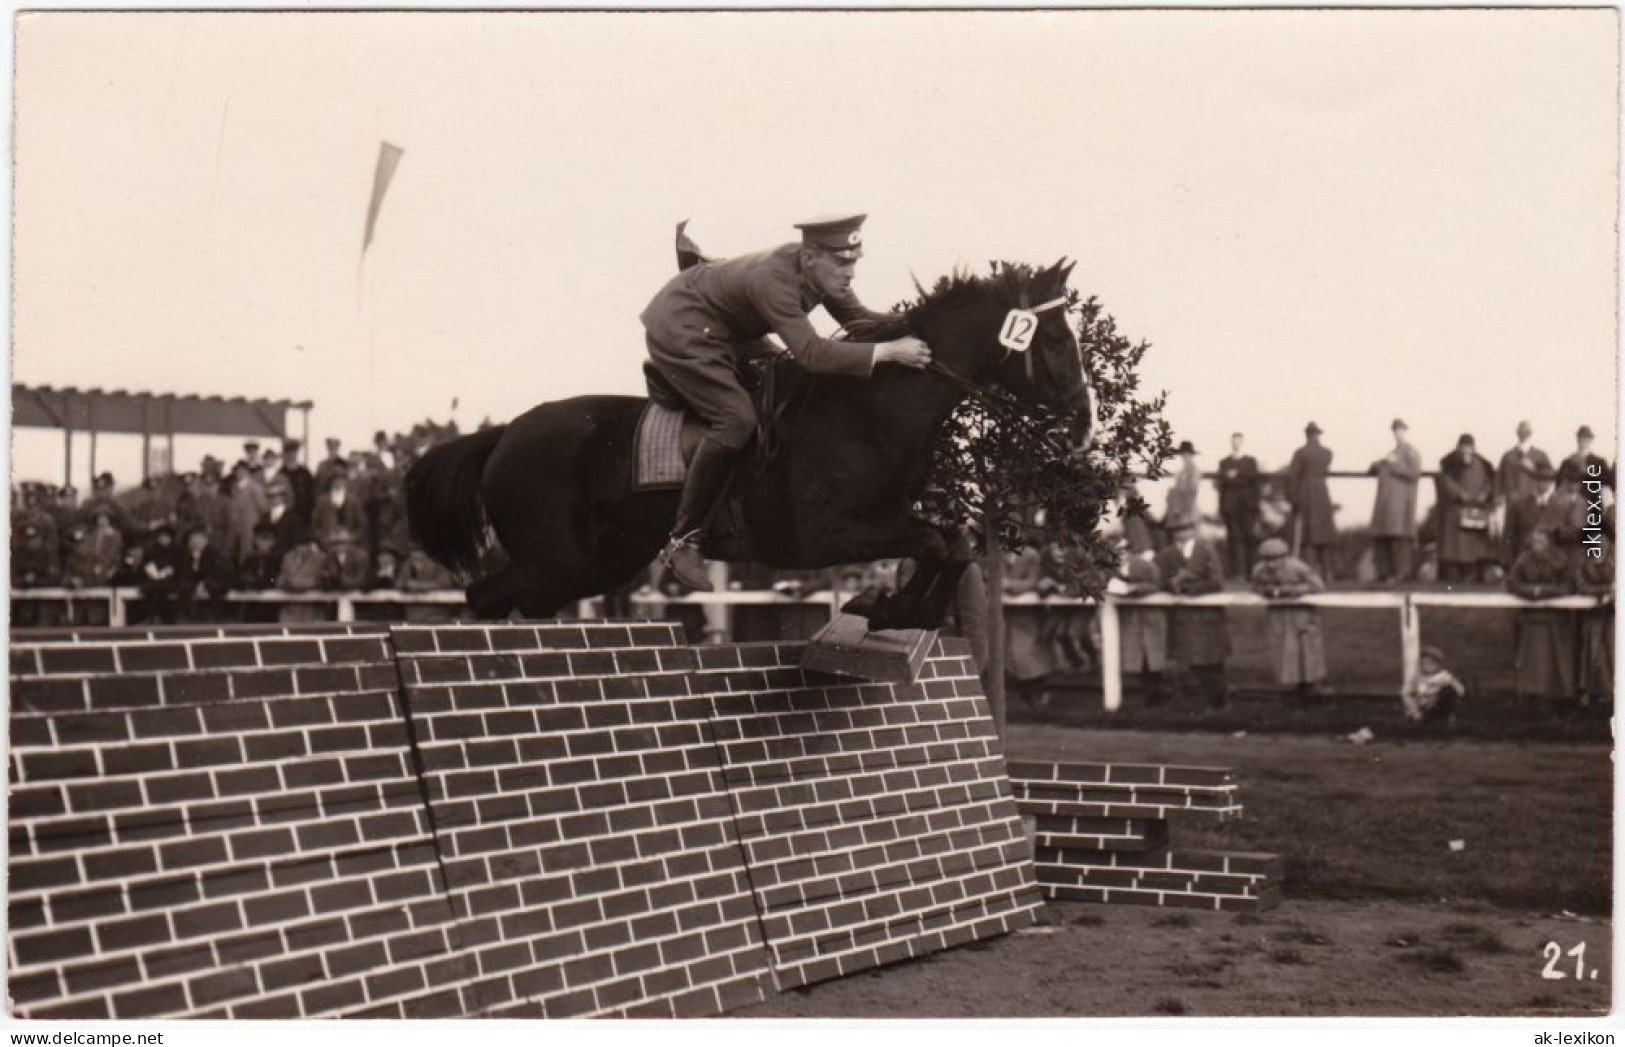 Ansichtskarte  Springreiter - Sprung über Mauer, Turnier 1924 - Ippica